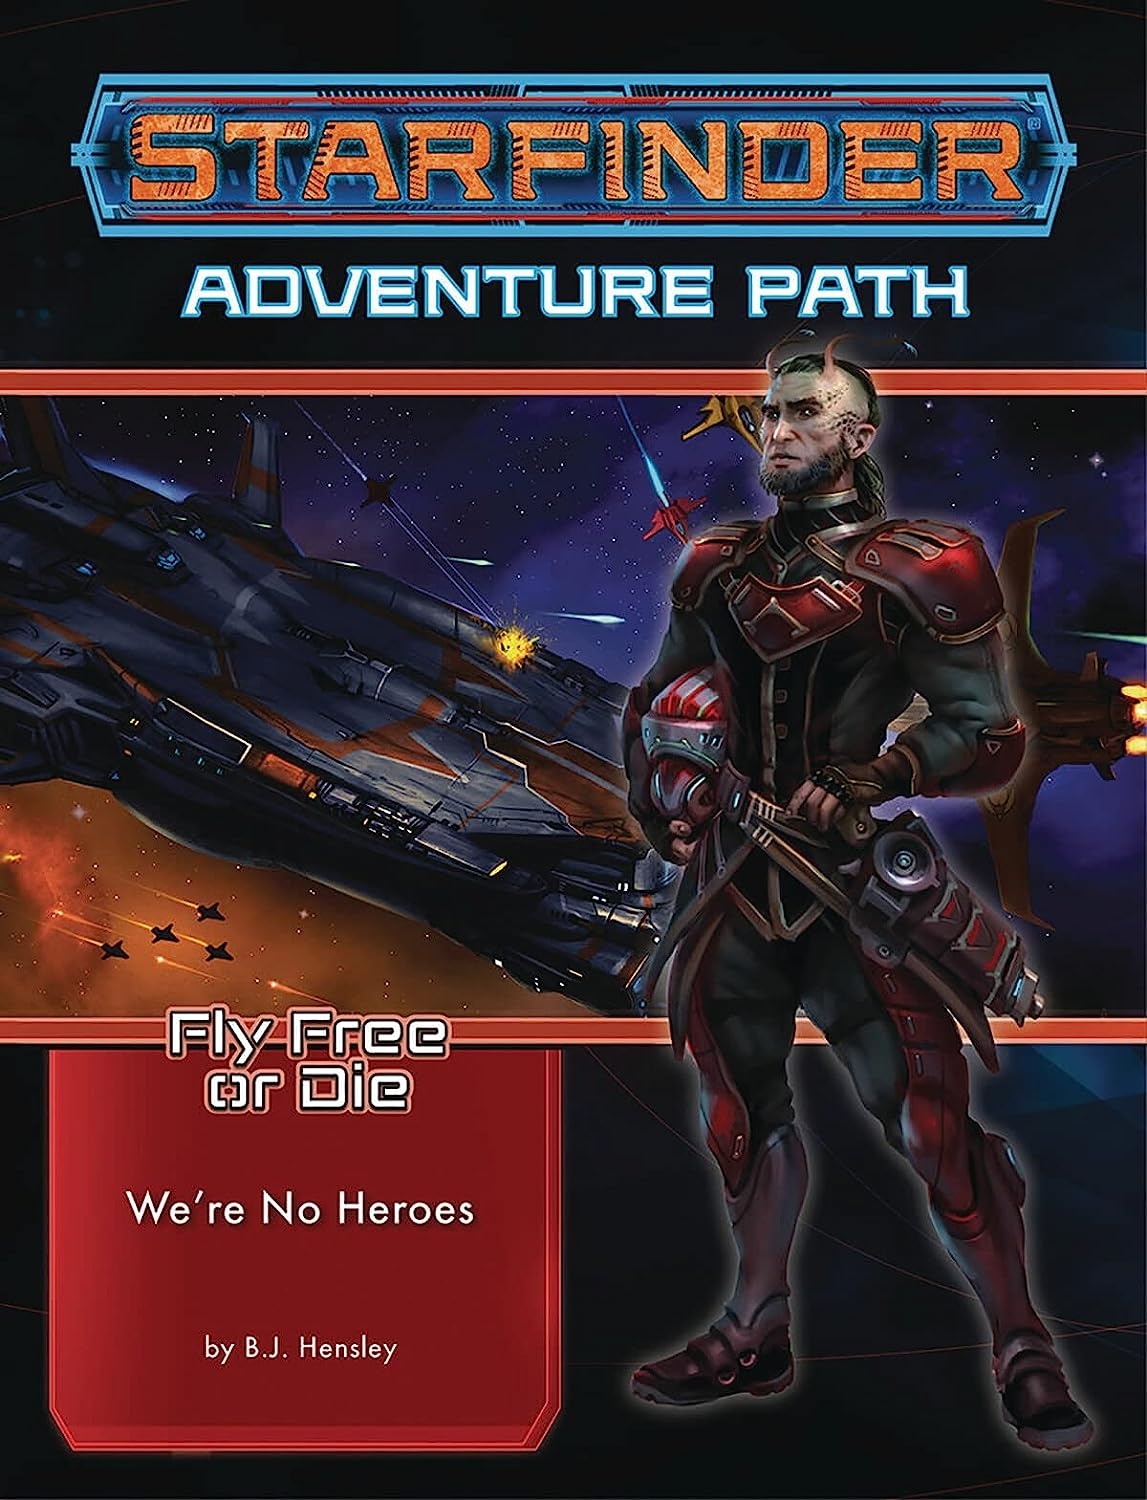 Starfinder Adventure Path 34: No somos héroes (vuelas libres o mueren 1 de 6)   price checker  